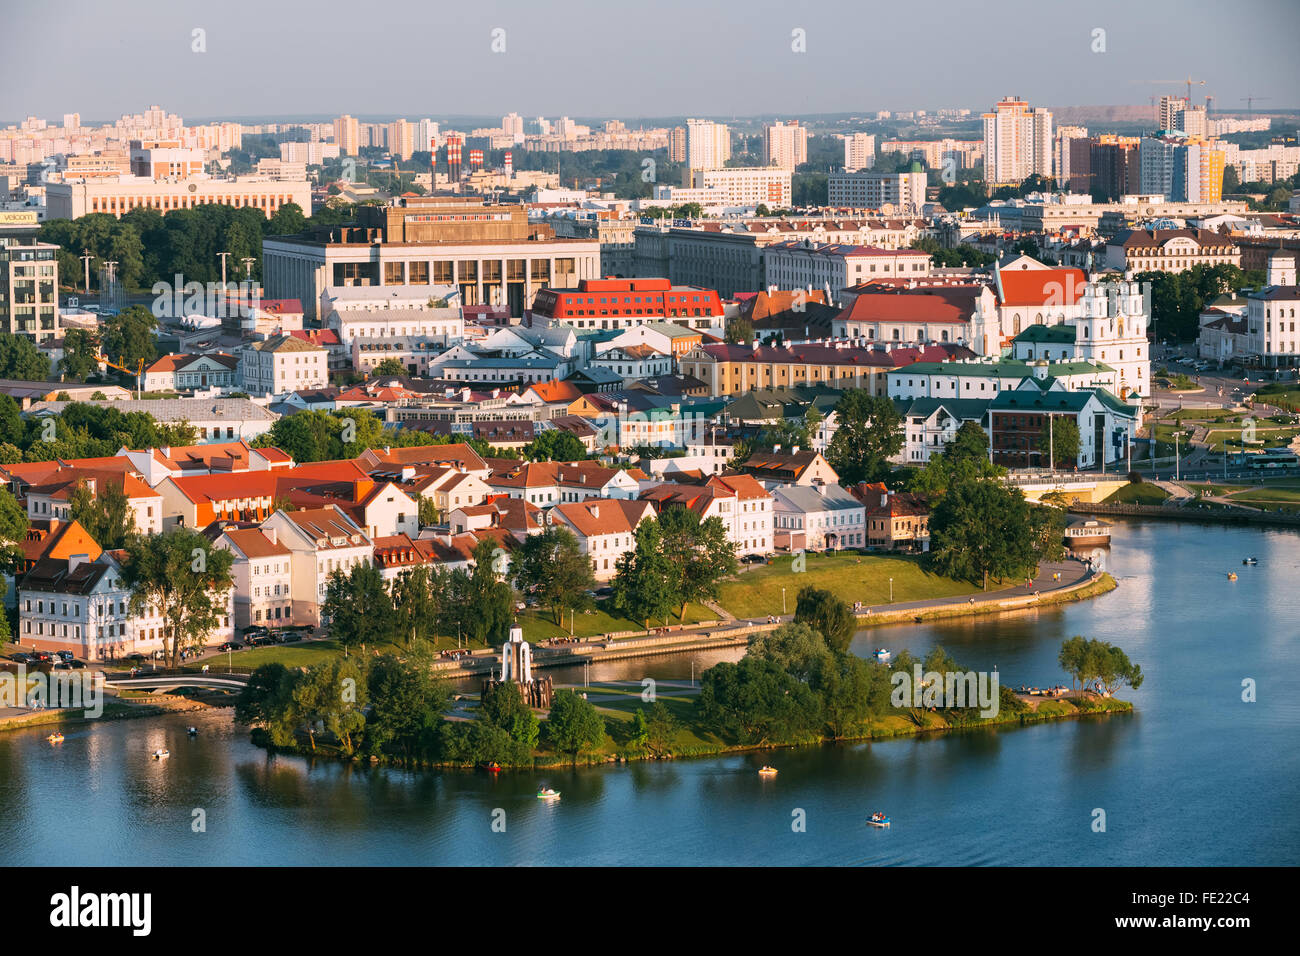 Vue panoramique aérienne de rues de la région de Minsk, en Biélorussie. Scène de la Trinity Hill, l'Île des larmes, Svislach en été le jour. Banque D'Images